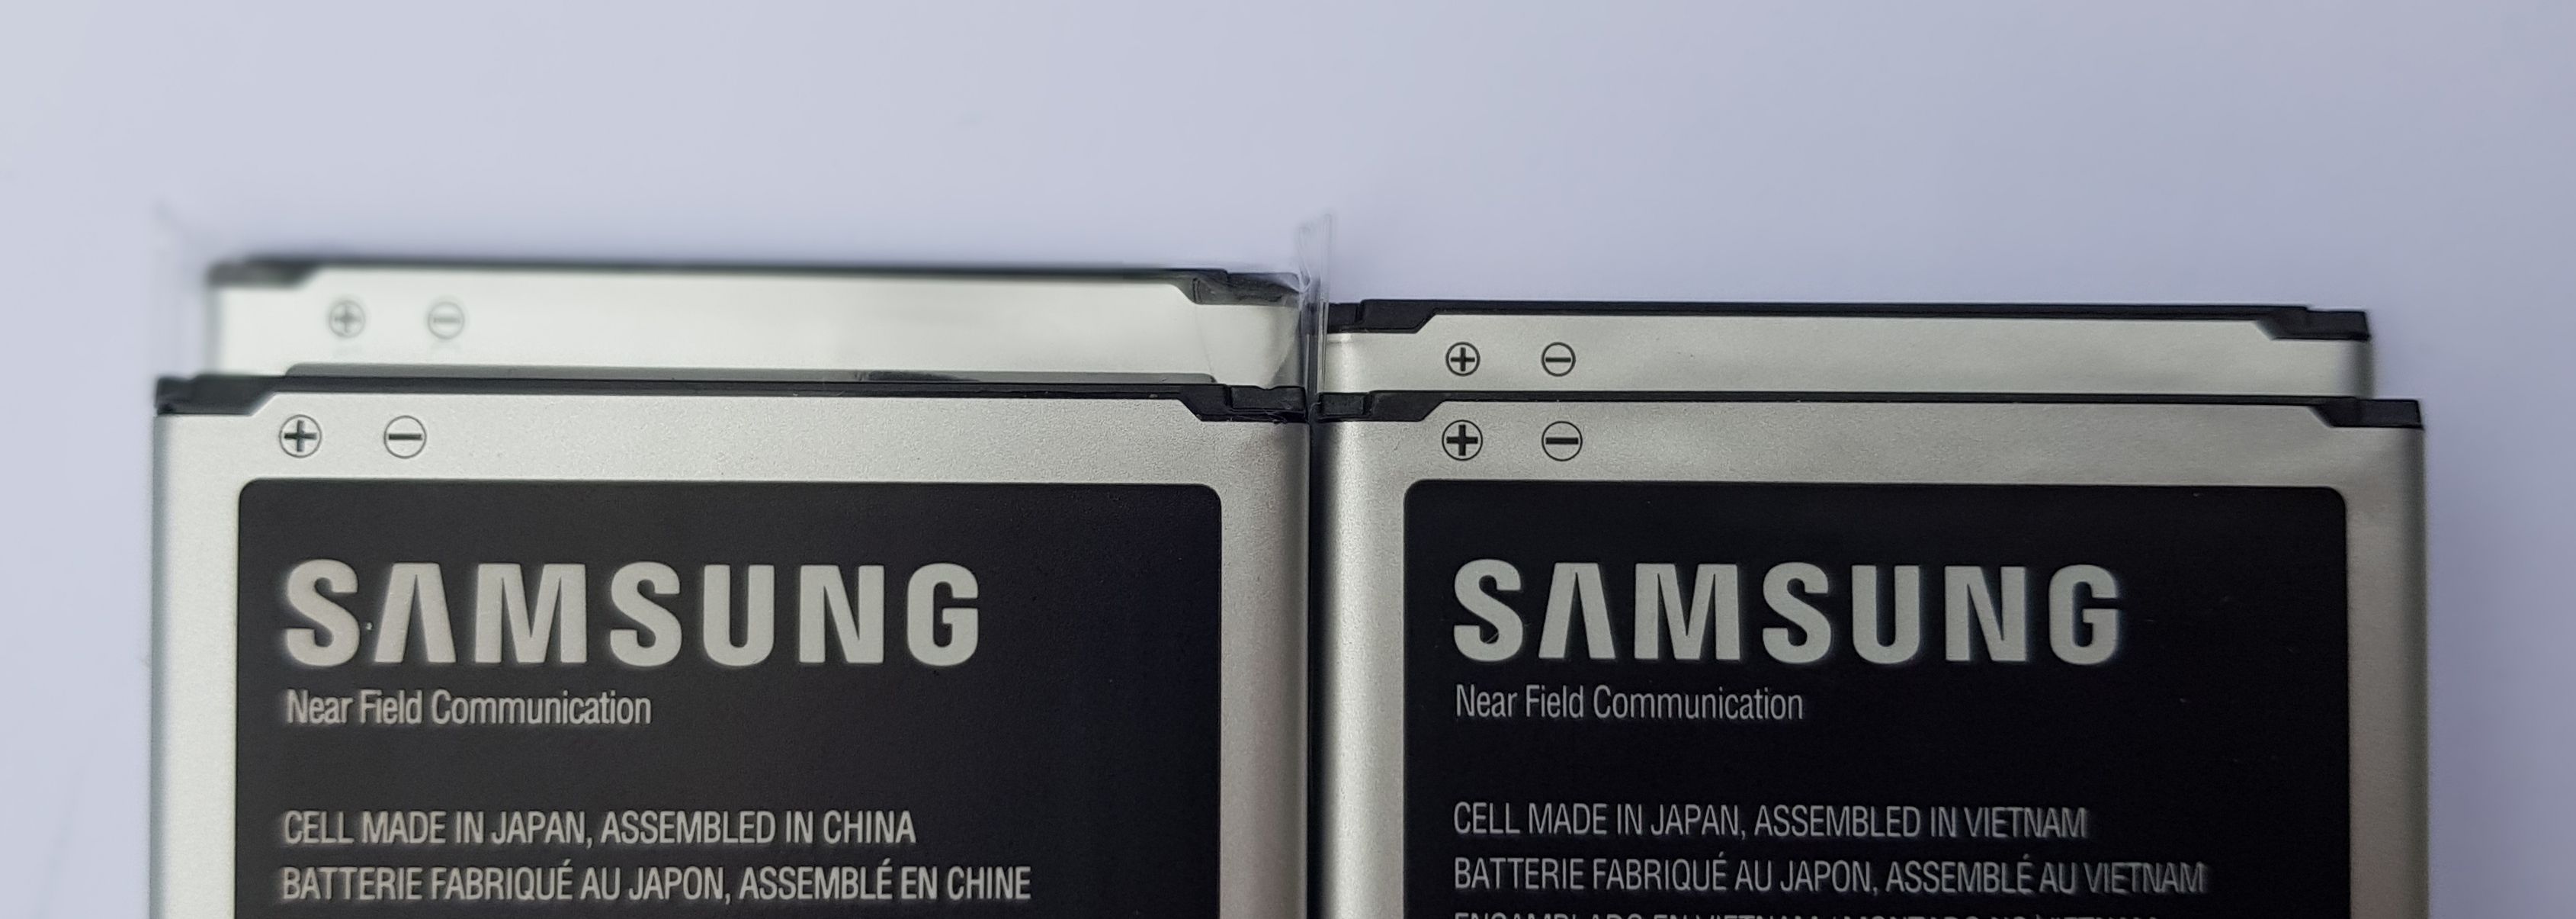 Opgelost: Hoe herken ik een immitatie batterij voor de Galaxy S4? - Samsung  Community